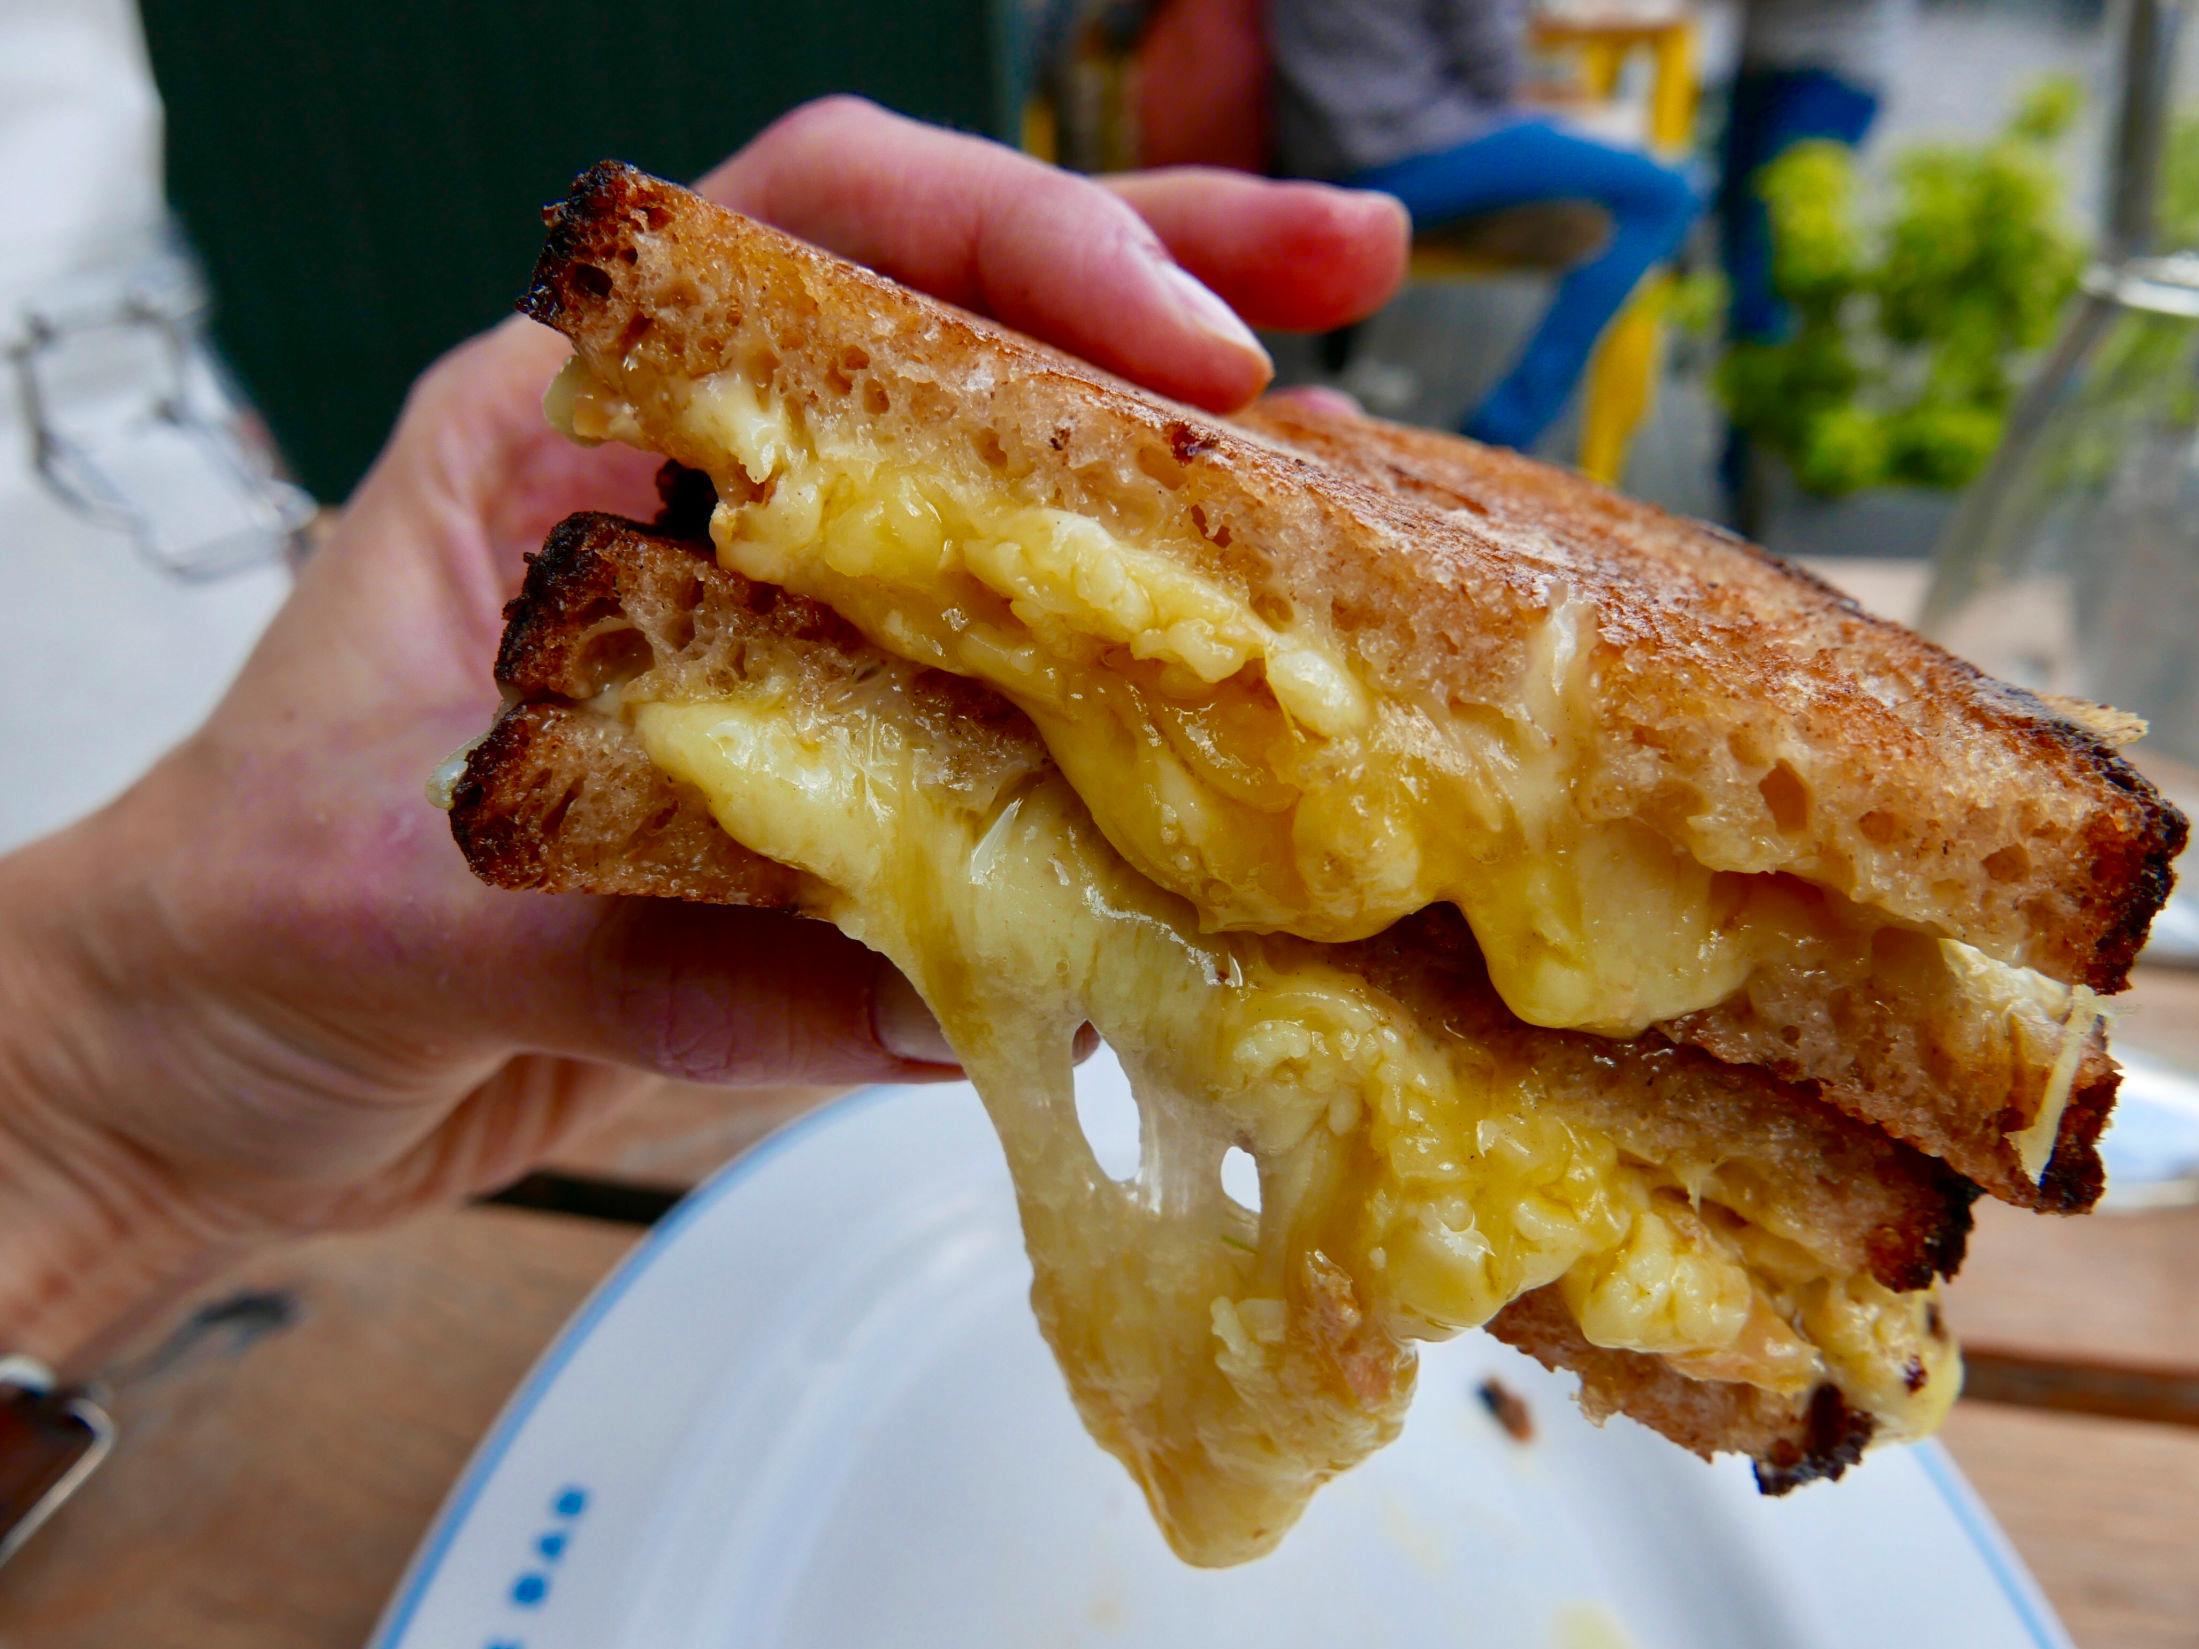 CHEESY: The cheese bar er kåret til beste sted i Storbritannia for ostesmørbrød. Stedet tar «Comfort food» til et nytt nivå. Her: Cheddar grilled sandwich. Foto: Nora Thorp Bjørnstad/VG